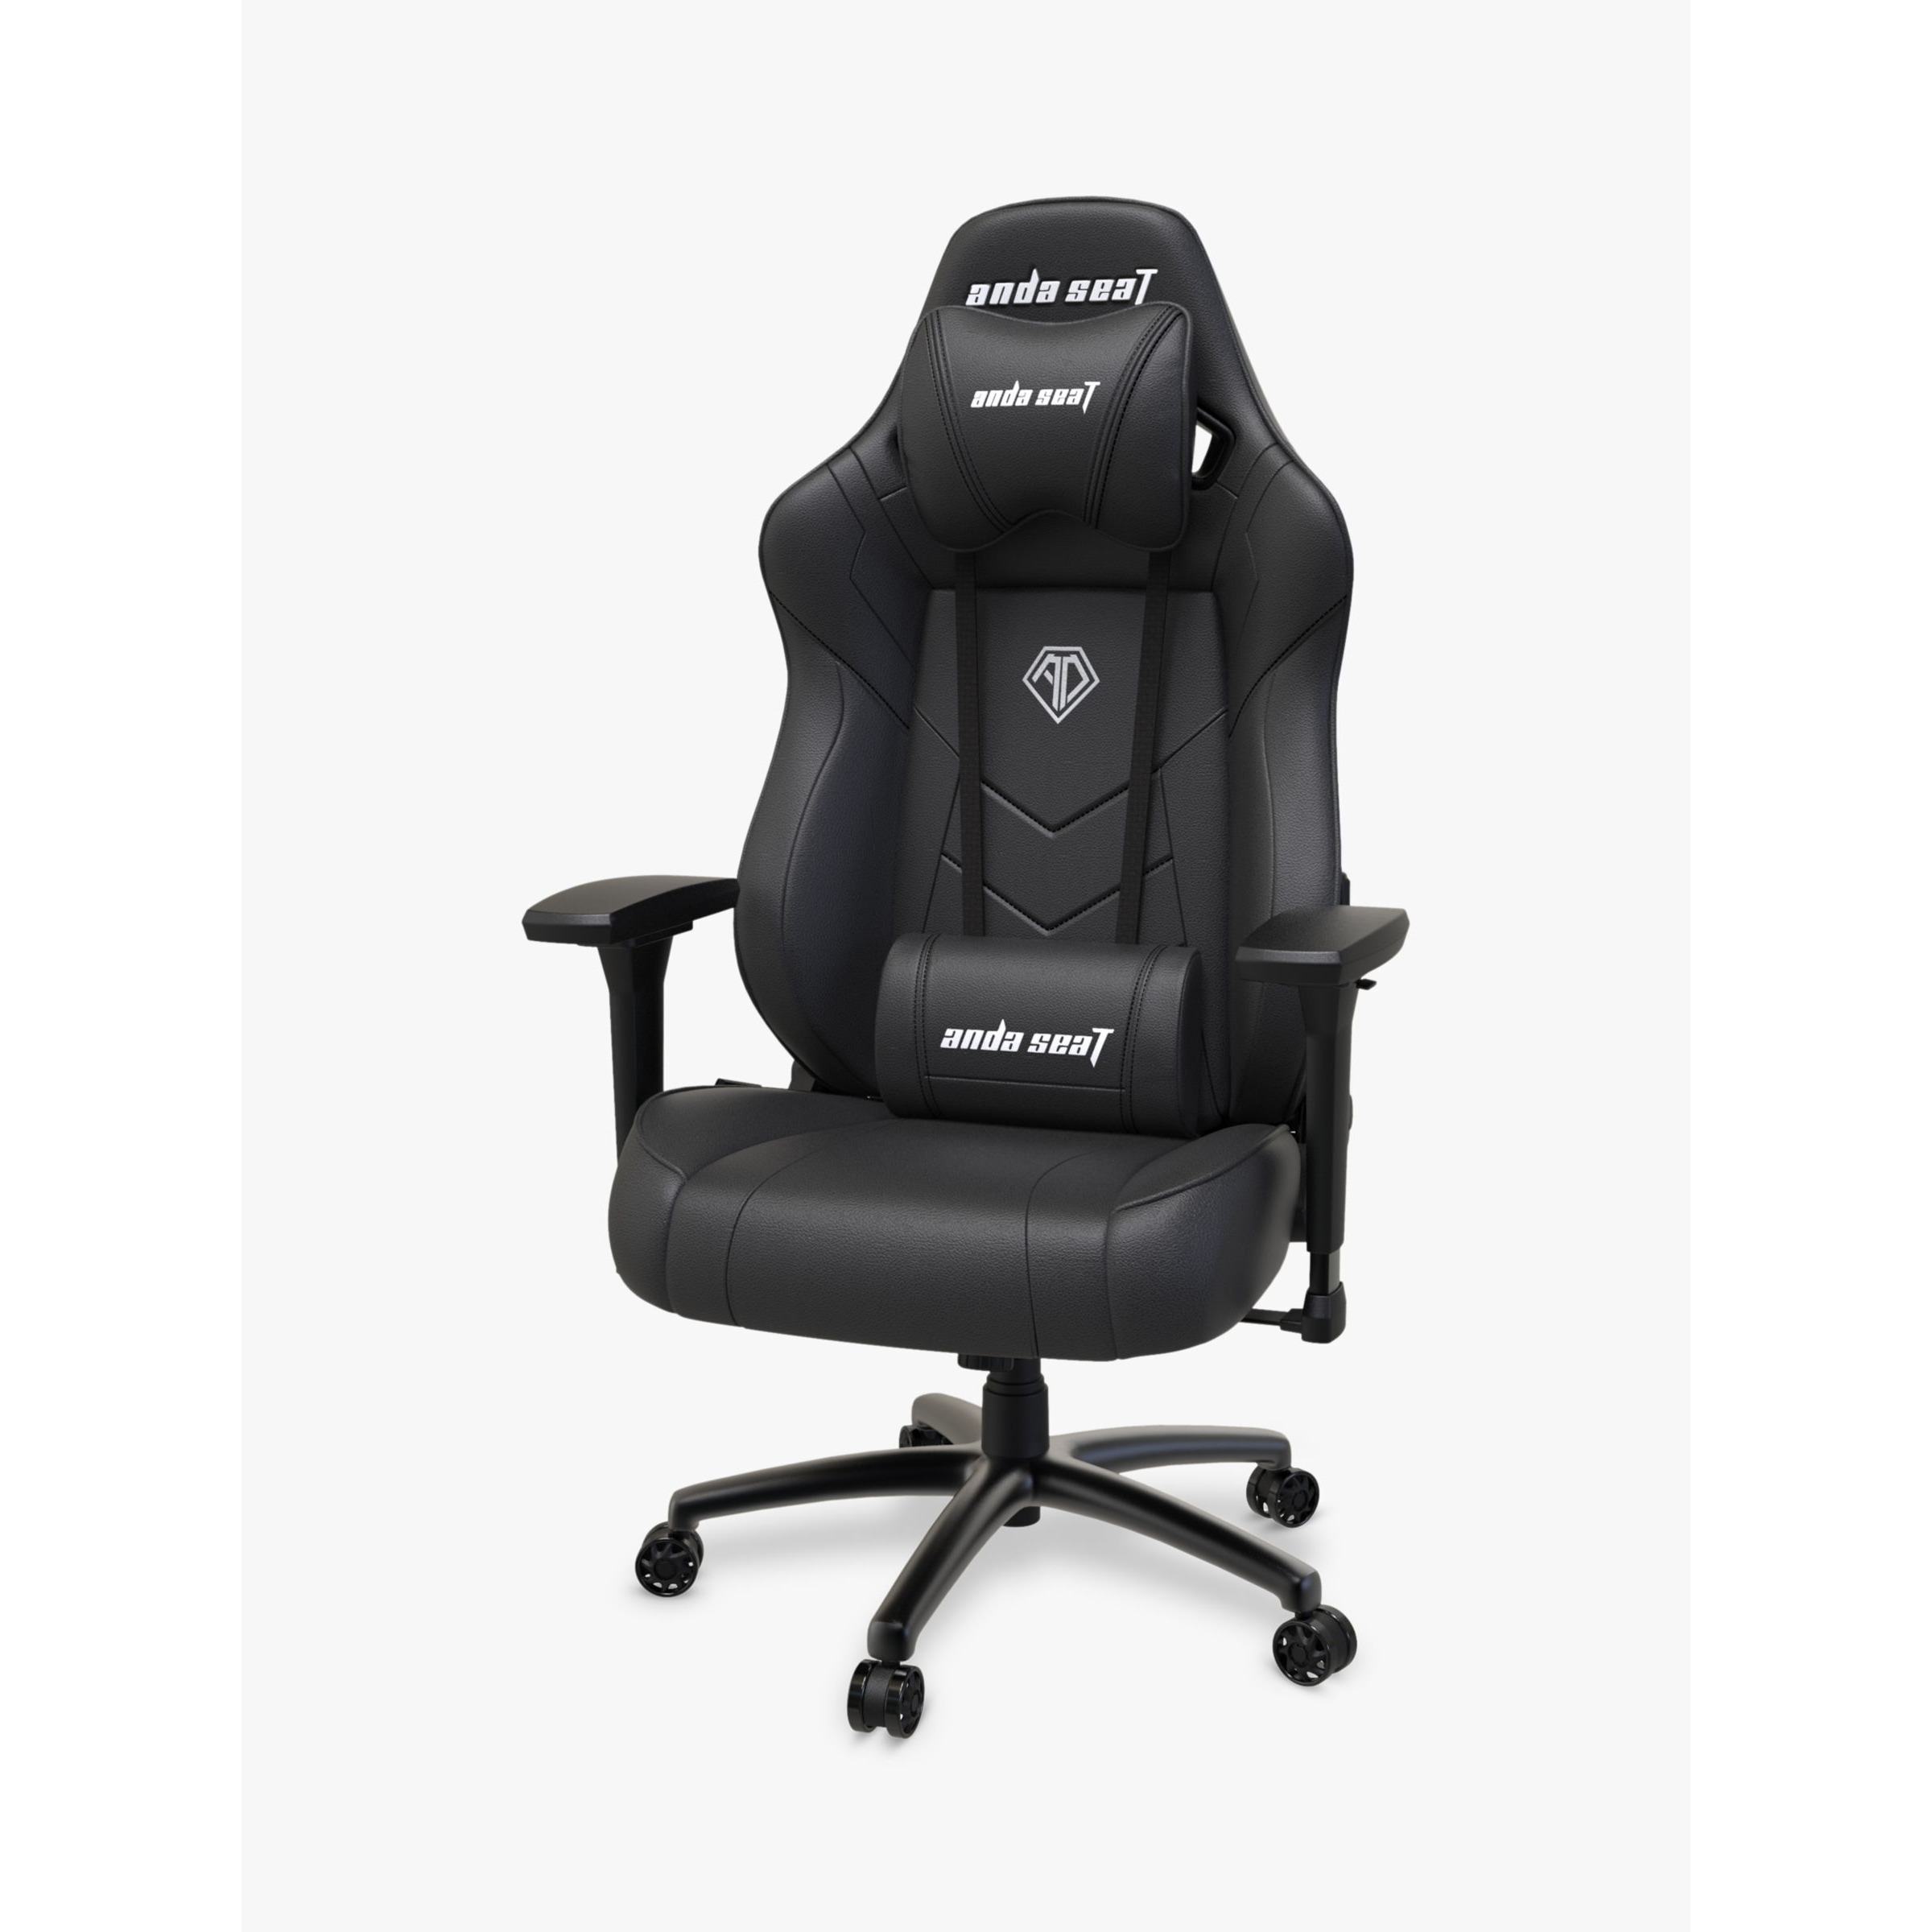 anda seaT Dark Demon Premium Gaming Chair - image 1